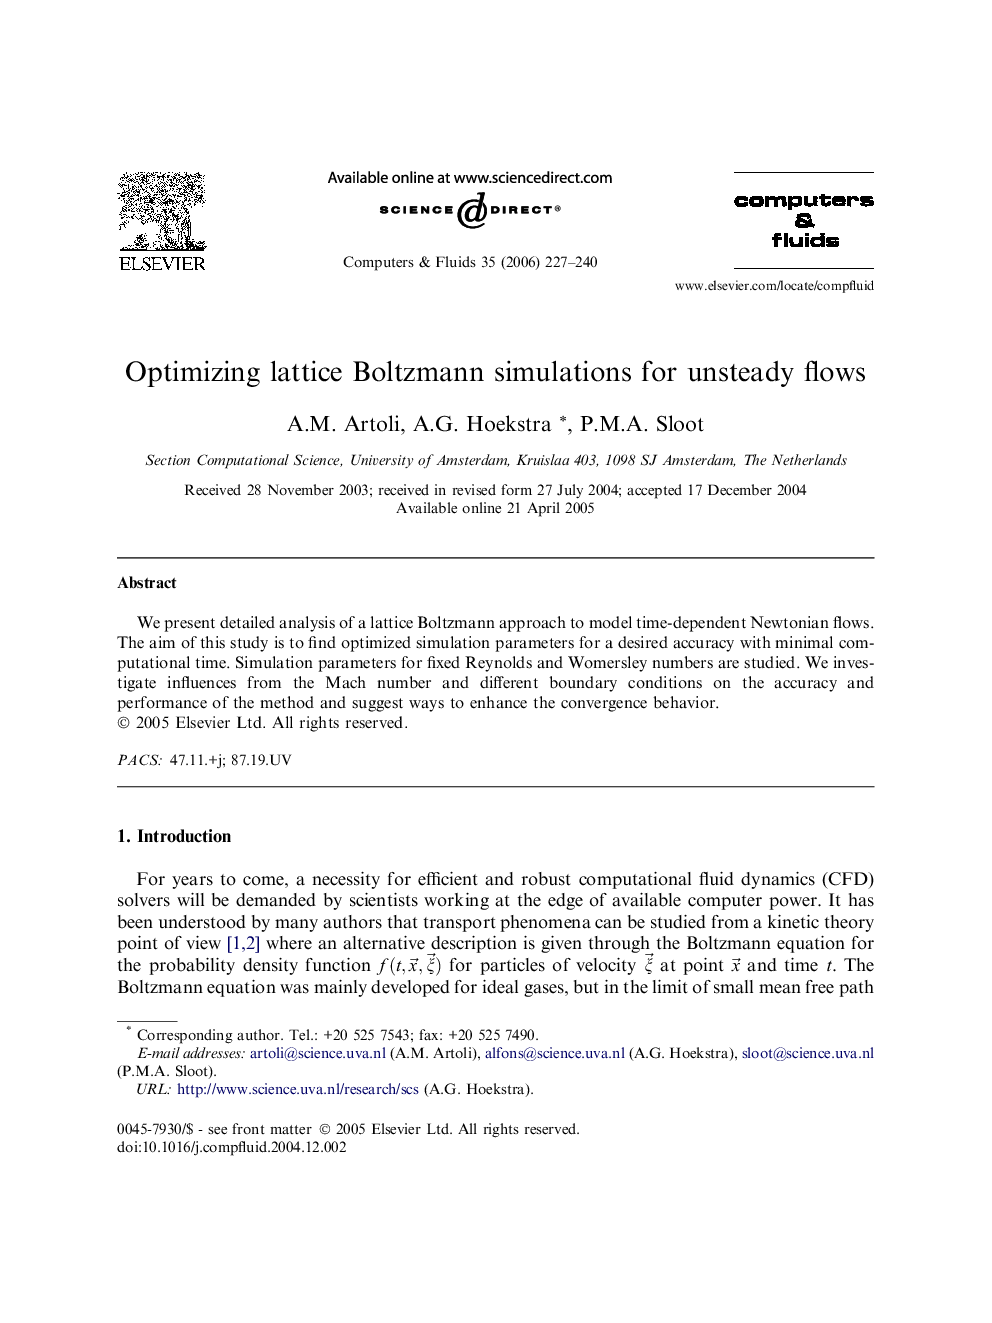 Optimizing lattice Boltzmann simulations for unsteady flows